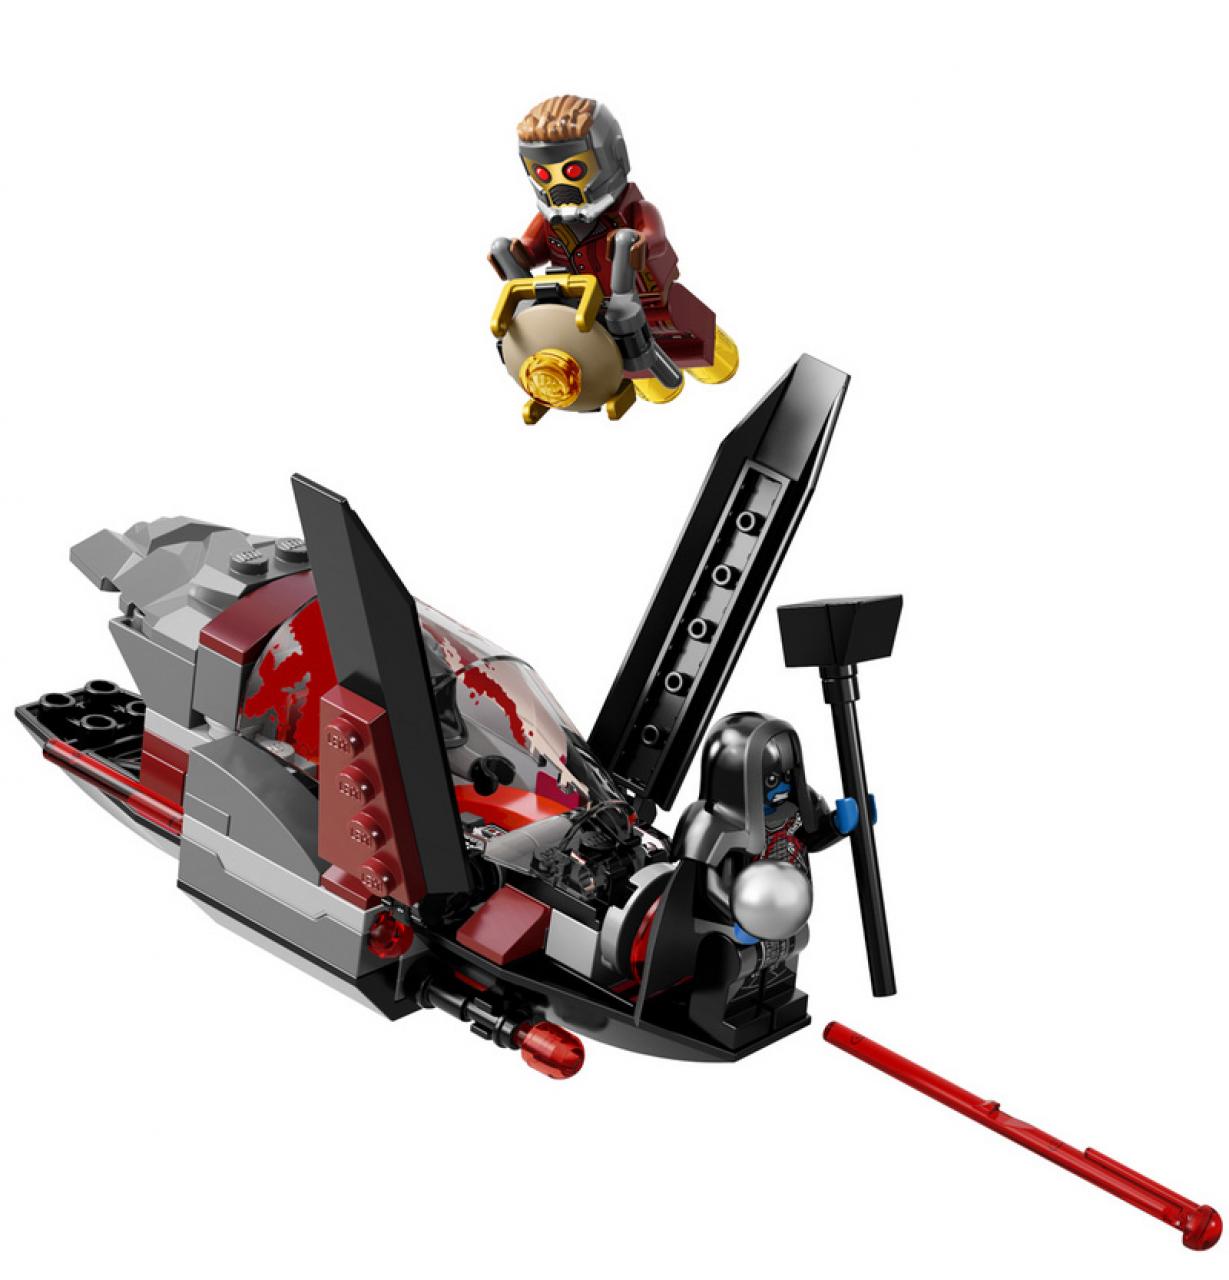 hr_Guardians_of_the_Galaxy_LEGOs_2.jpg